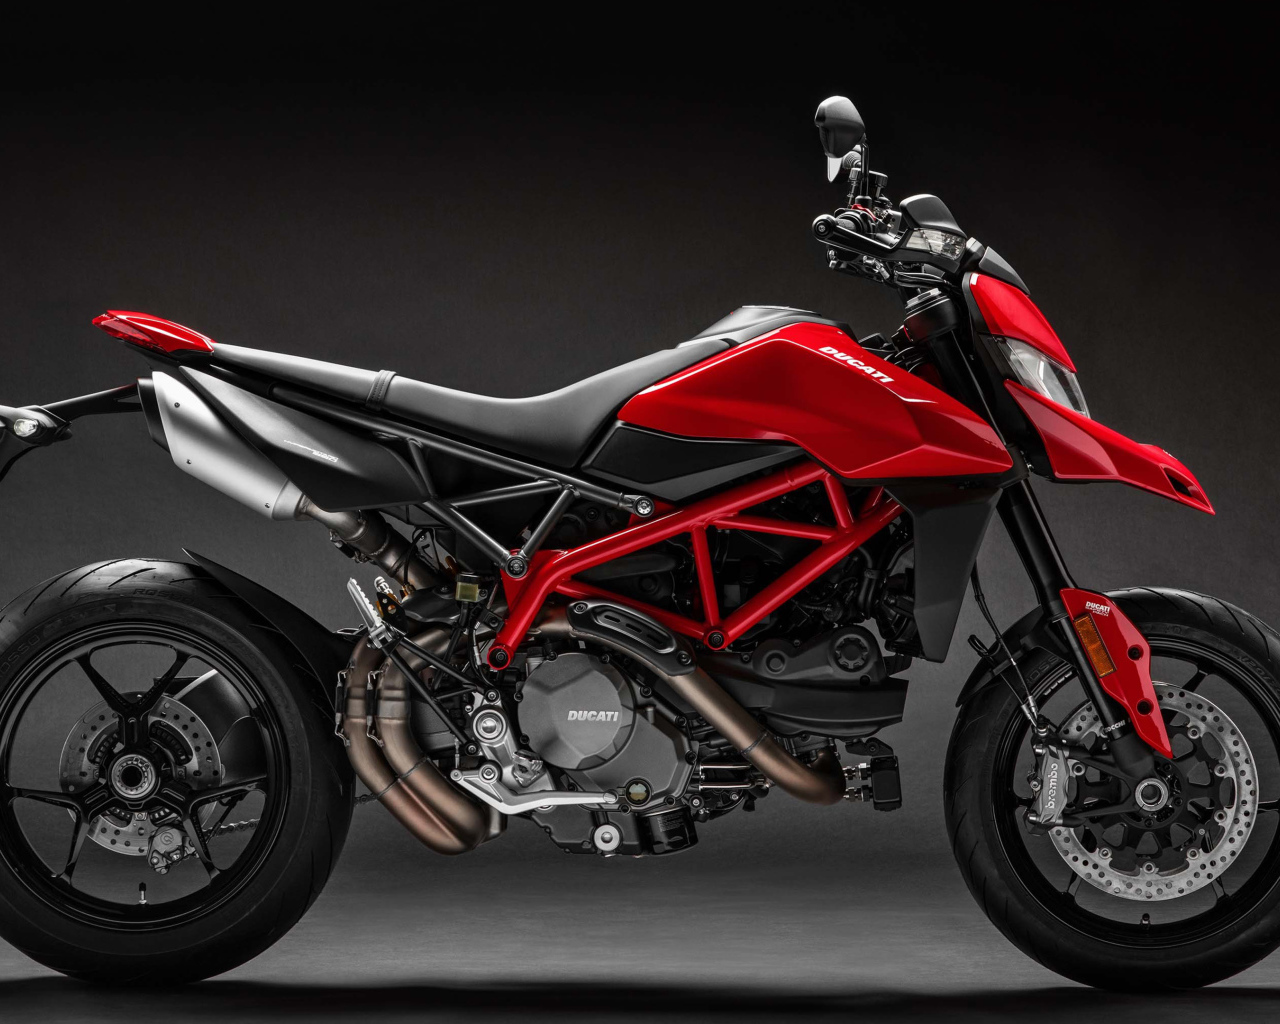 Мотоцикл  Ducati Hypermotard 950, 2019 года на сером фоне